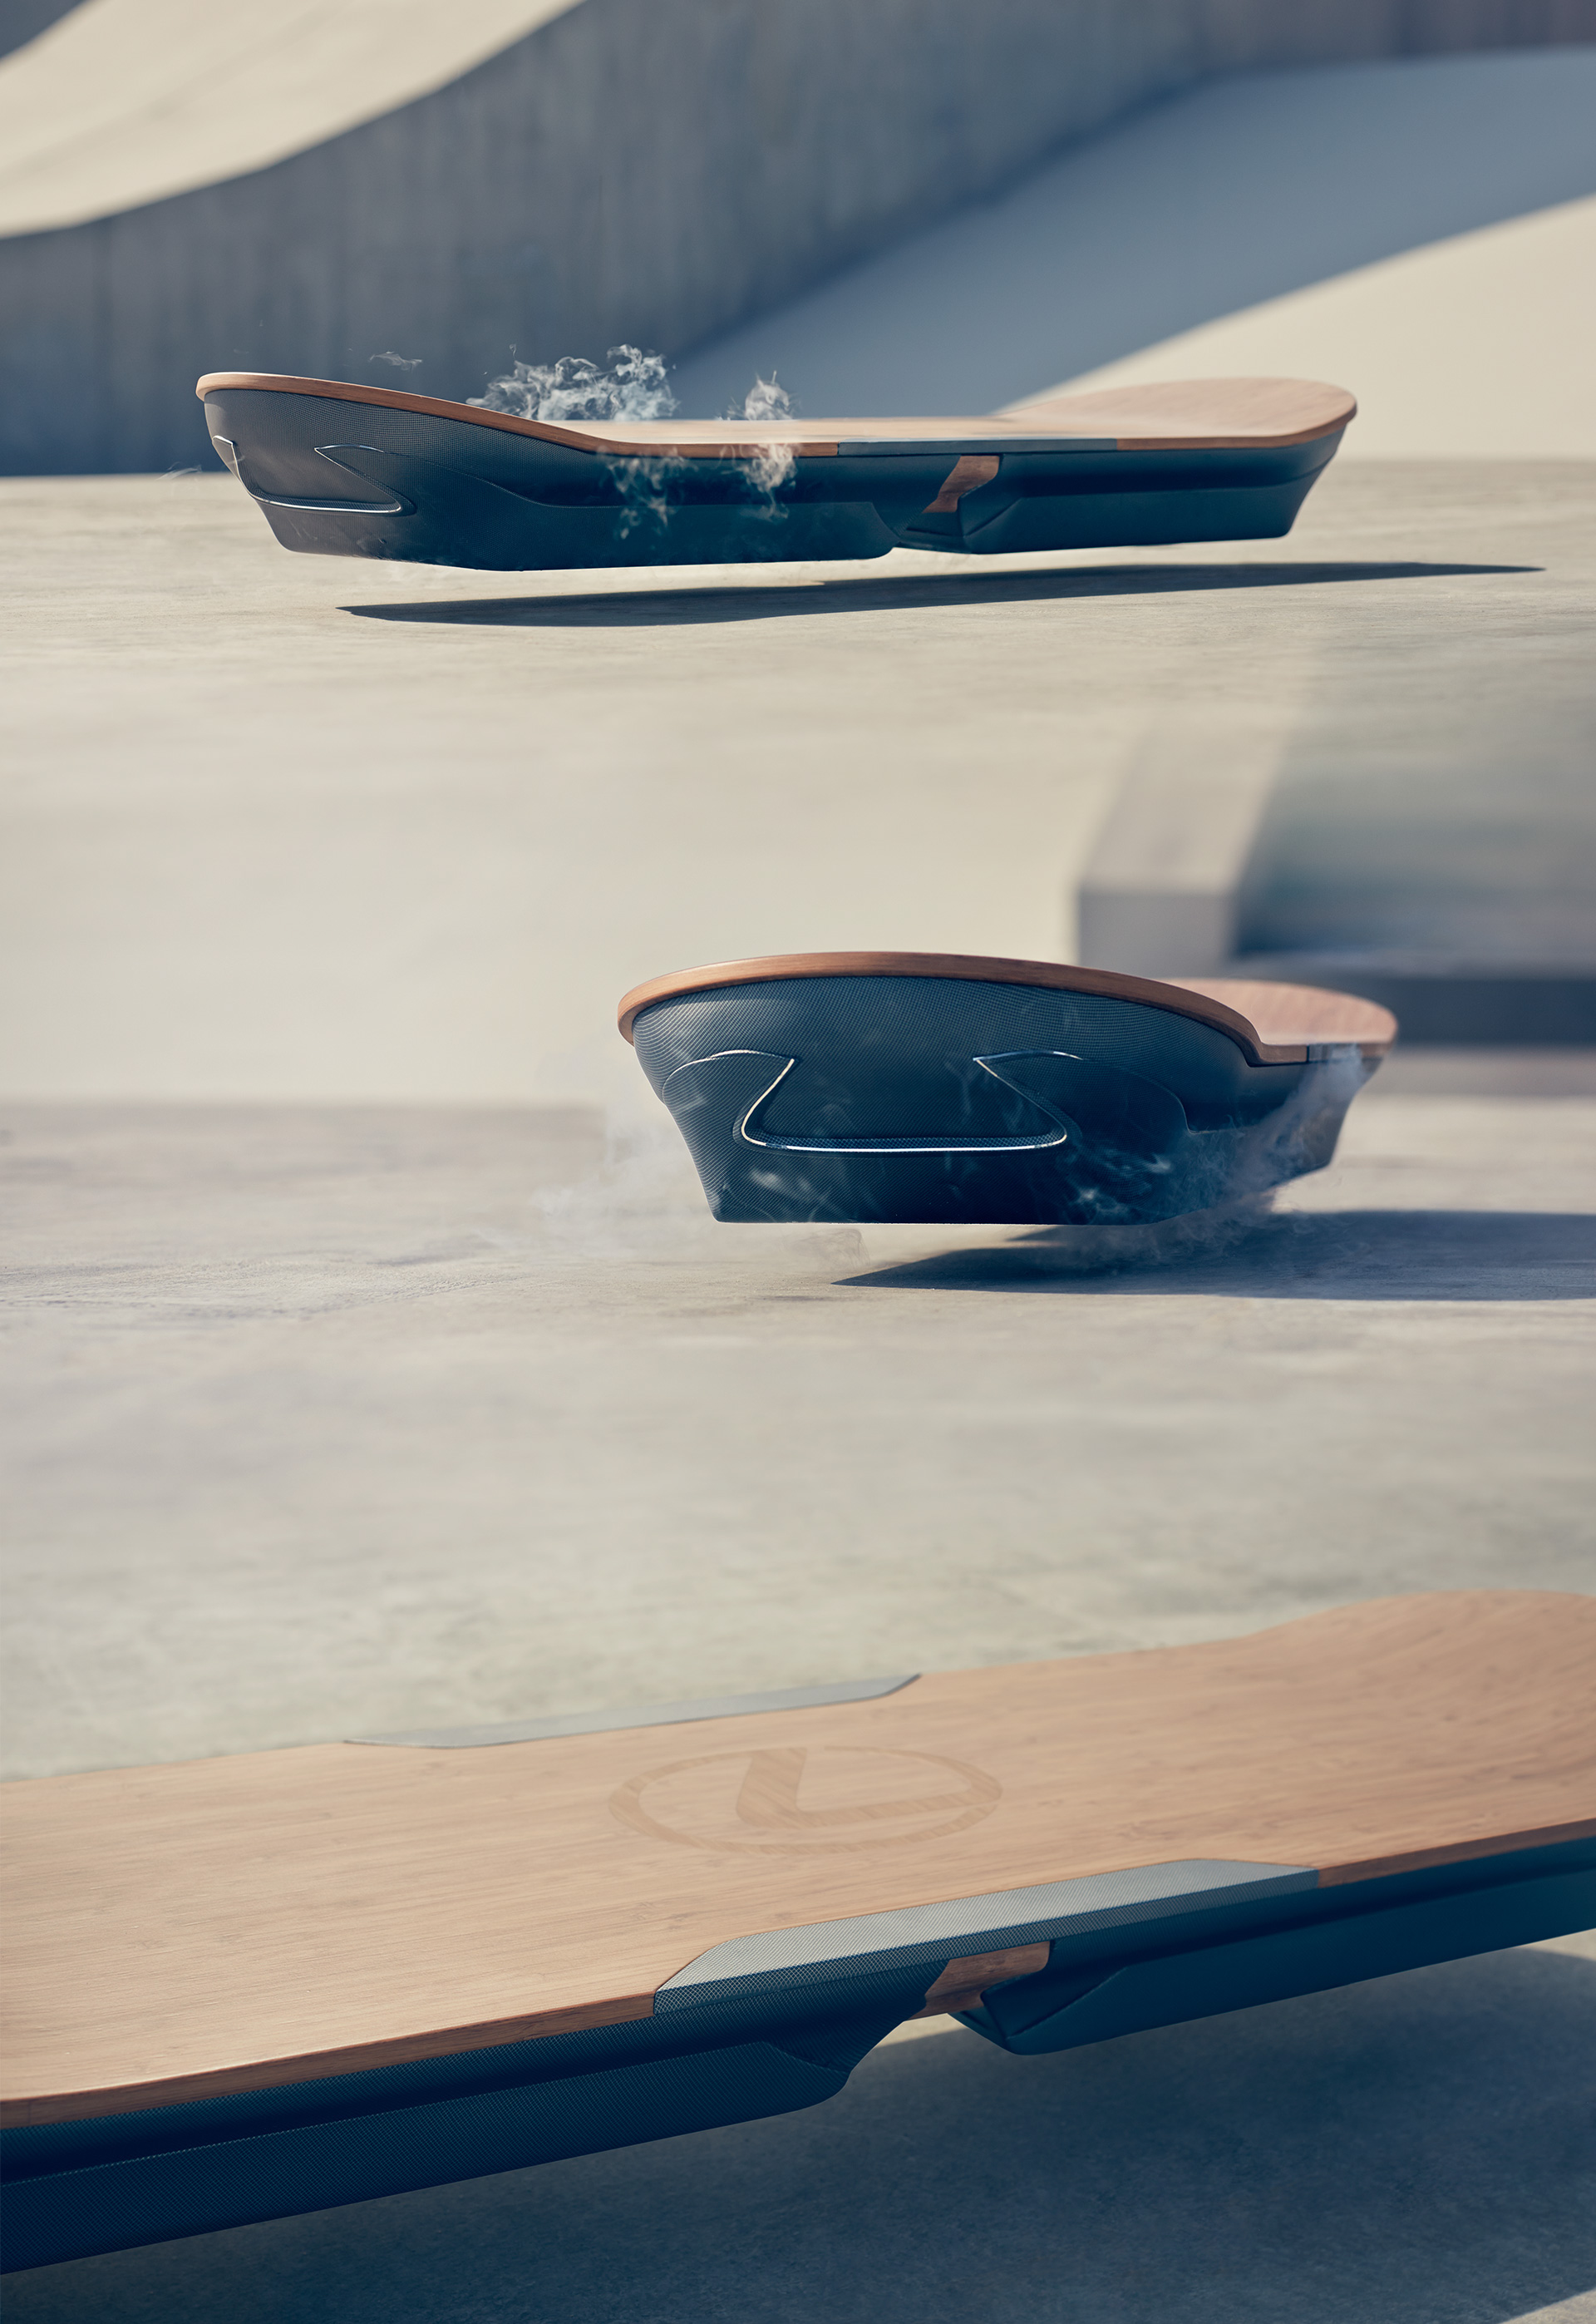 Lexus Hoverboard via theoctopian.com